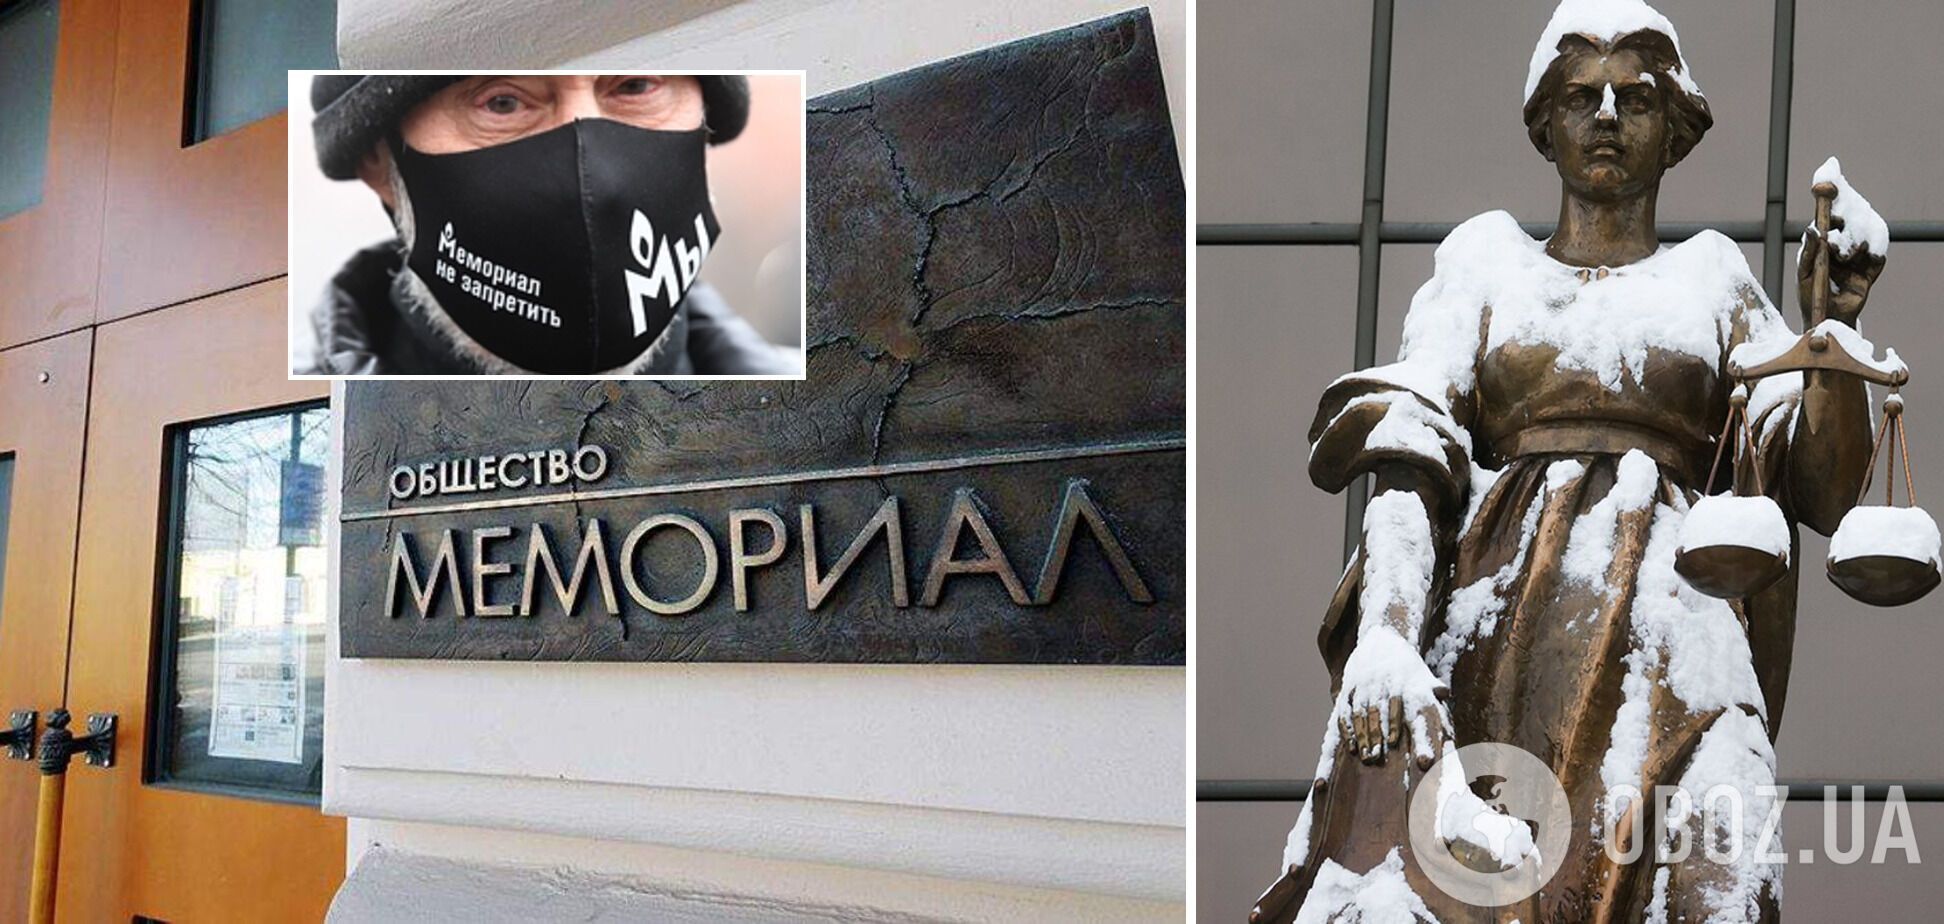 Найстарішу в Росії правозахисну організацію "Меморіал" закрили рішенням Верховного суду РФ